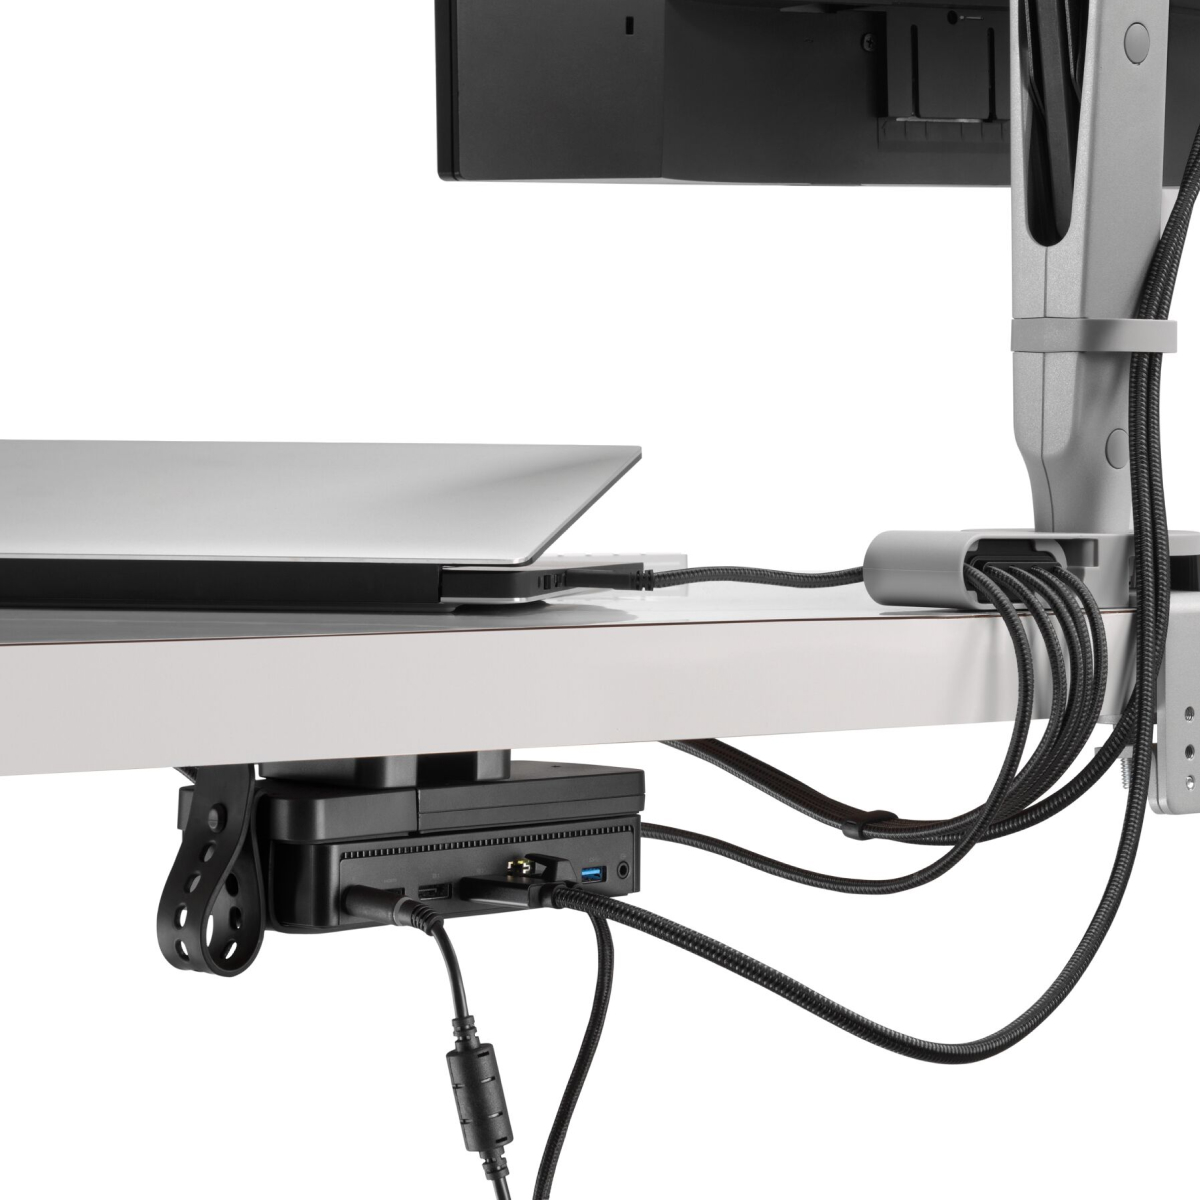 斜后方视图：显示器屏幕的缆线从相连的显示器挂臂出发，依次通过Ondo连接模块、笔记本电脑和办公桌底下的环形微型支架。